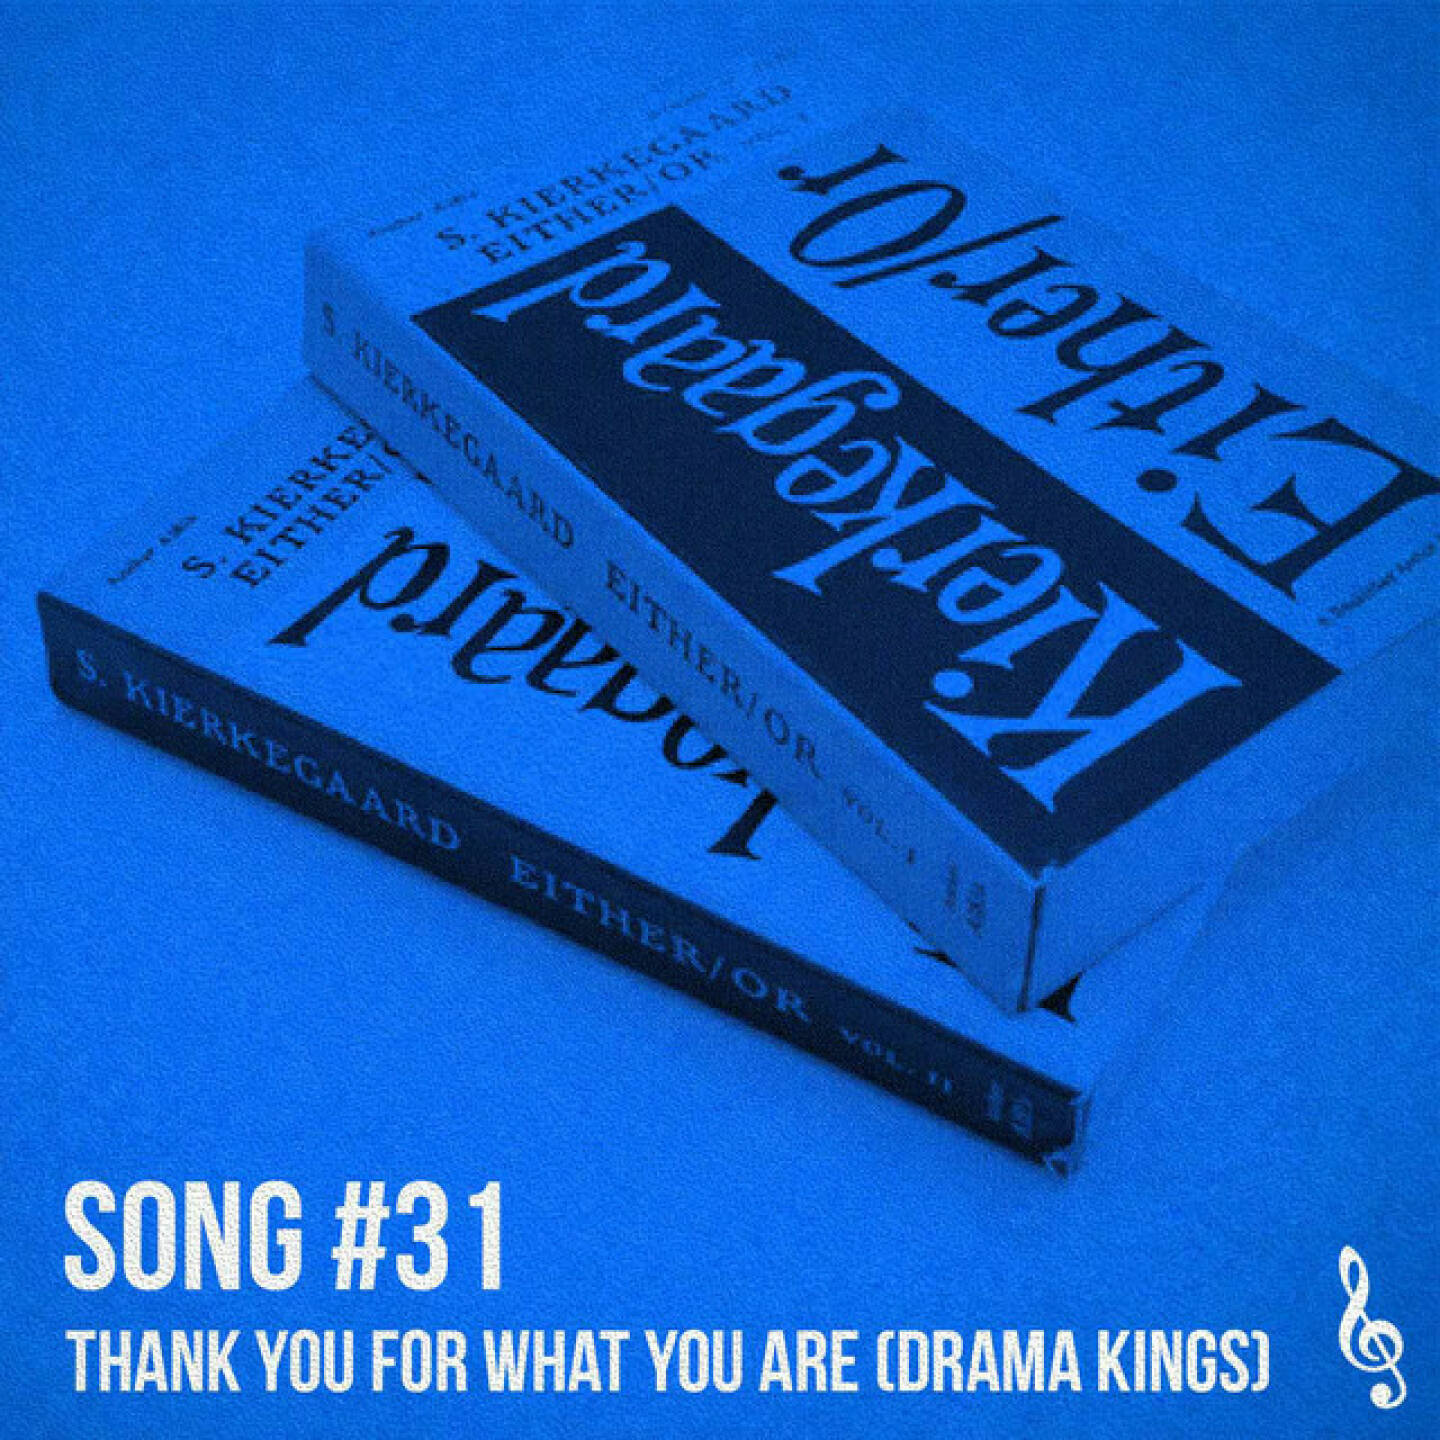 https://open.spotify.com/episode/40n5IemRNY94DfbOnPqYYA
Song #31: Thank you for what you are (Drama Kings) - <p>Song 31 ist aus dem Juli 2022 und eine Song-Skizze von dra auf Basis des Yamaha Montage mit Selbsteinschätzung &#34;Kaufhausmusik der 70er&#34;. Das Ganze produziert von Michi, also ein Mix der Drama Kings im 1st Take, die Version wird später mal durch eine verfeinerte Version ersetzt. Und Either/or auf dem Bild? Ja, das ist wichtig, wie die Nummer #31.</p>